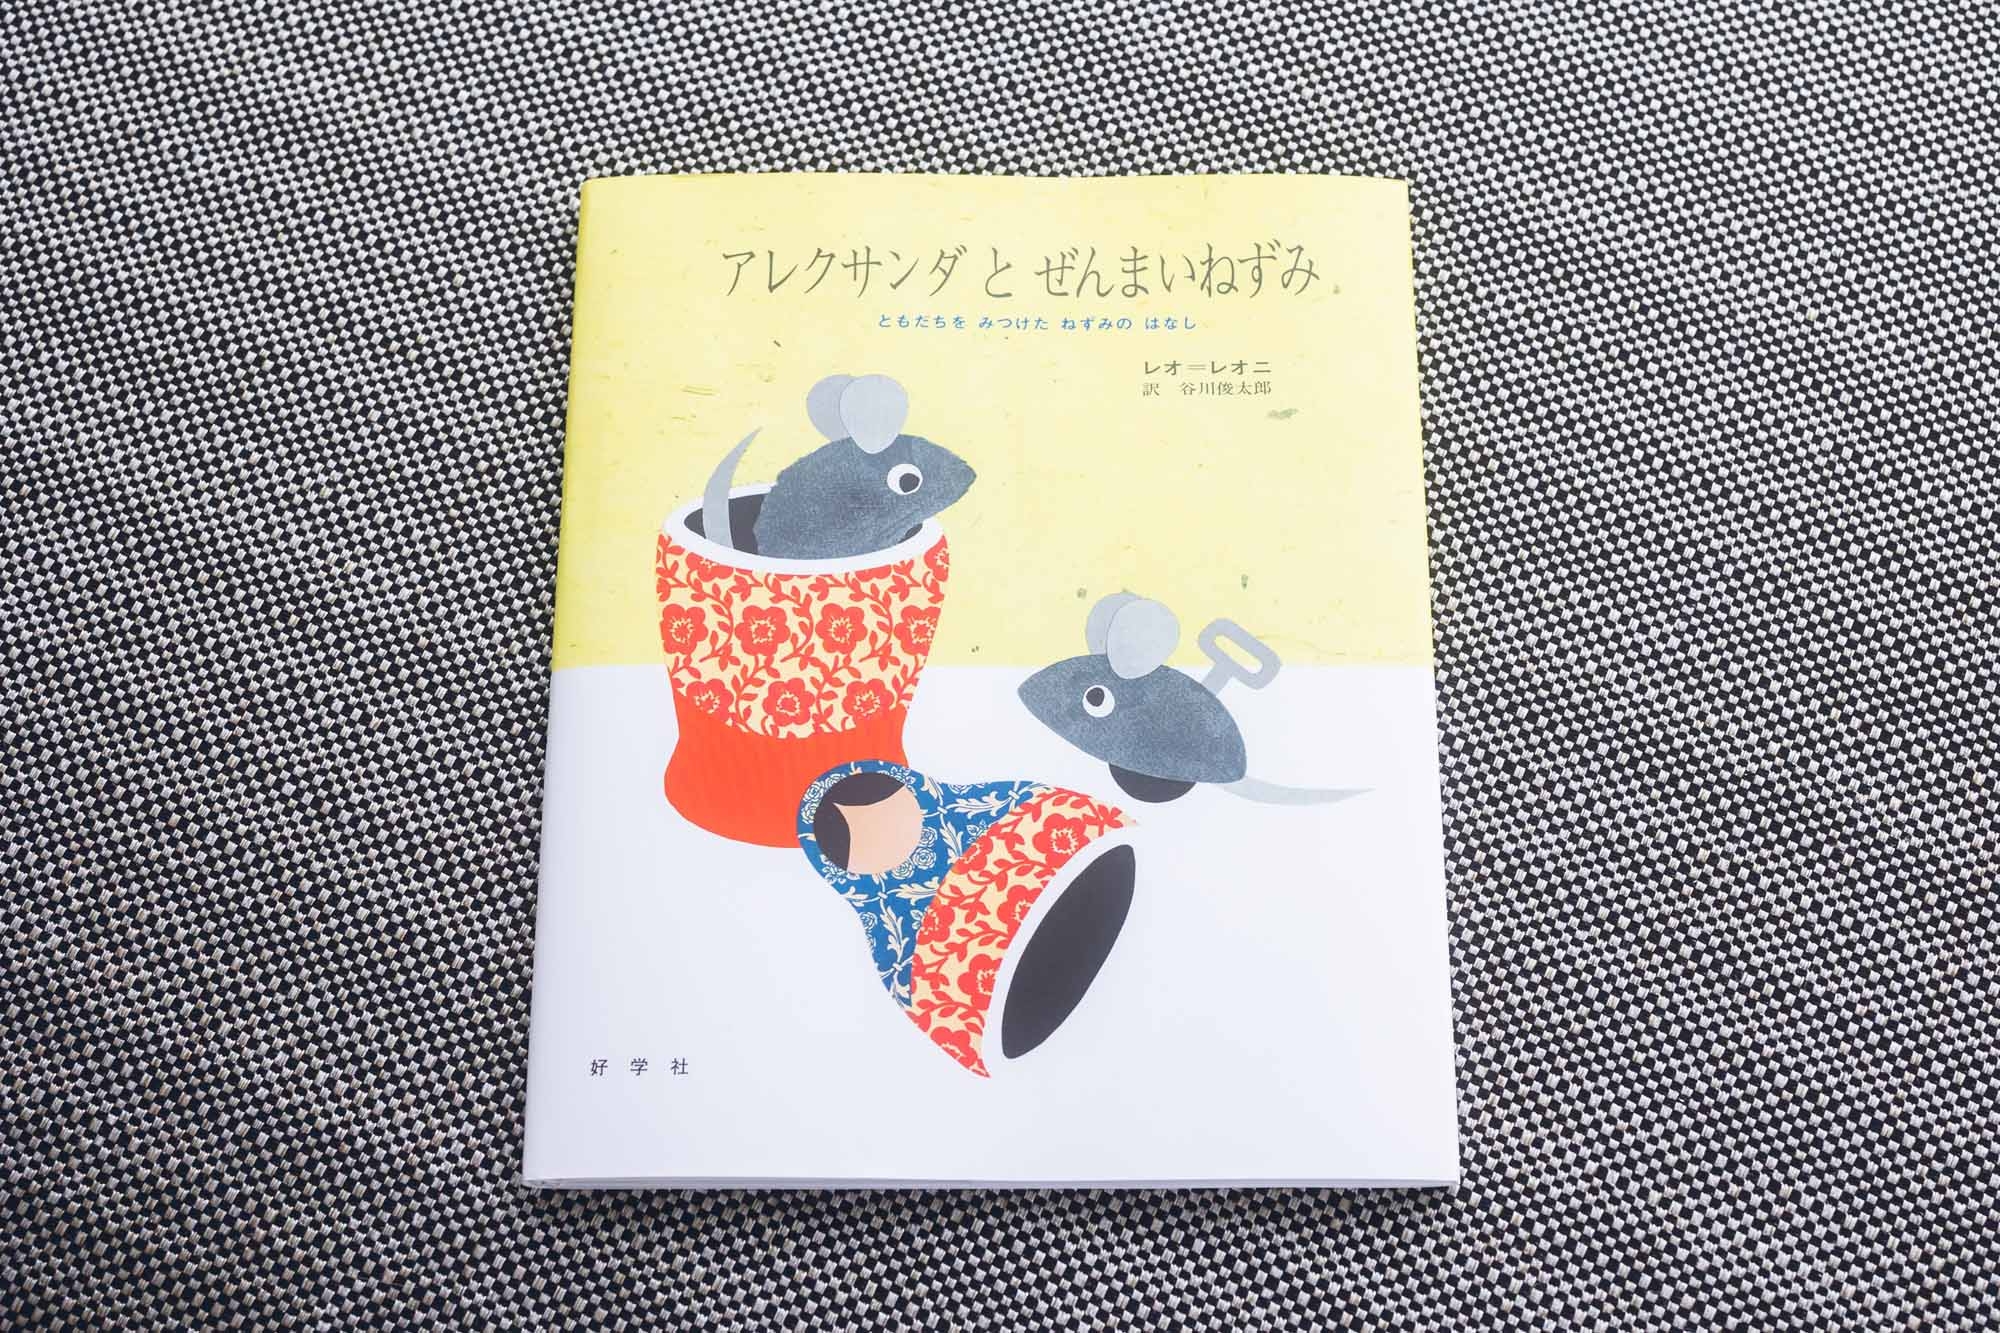 『スイミー』や『フレデリック』『あおくんときいろちゃん』などで知られる、世界的な絵本作家レオ・レオニが、1969年に発表した作品。日本語版の翻訳は、谷川俊太郎が手掛けている。温かみのある絵と深いストーリーで、世界中で愛され続けている名作絵本